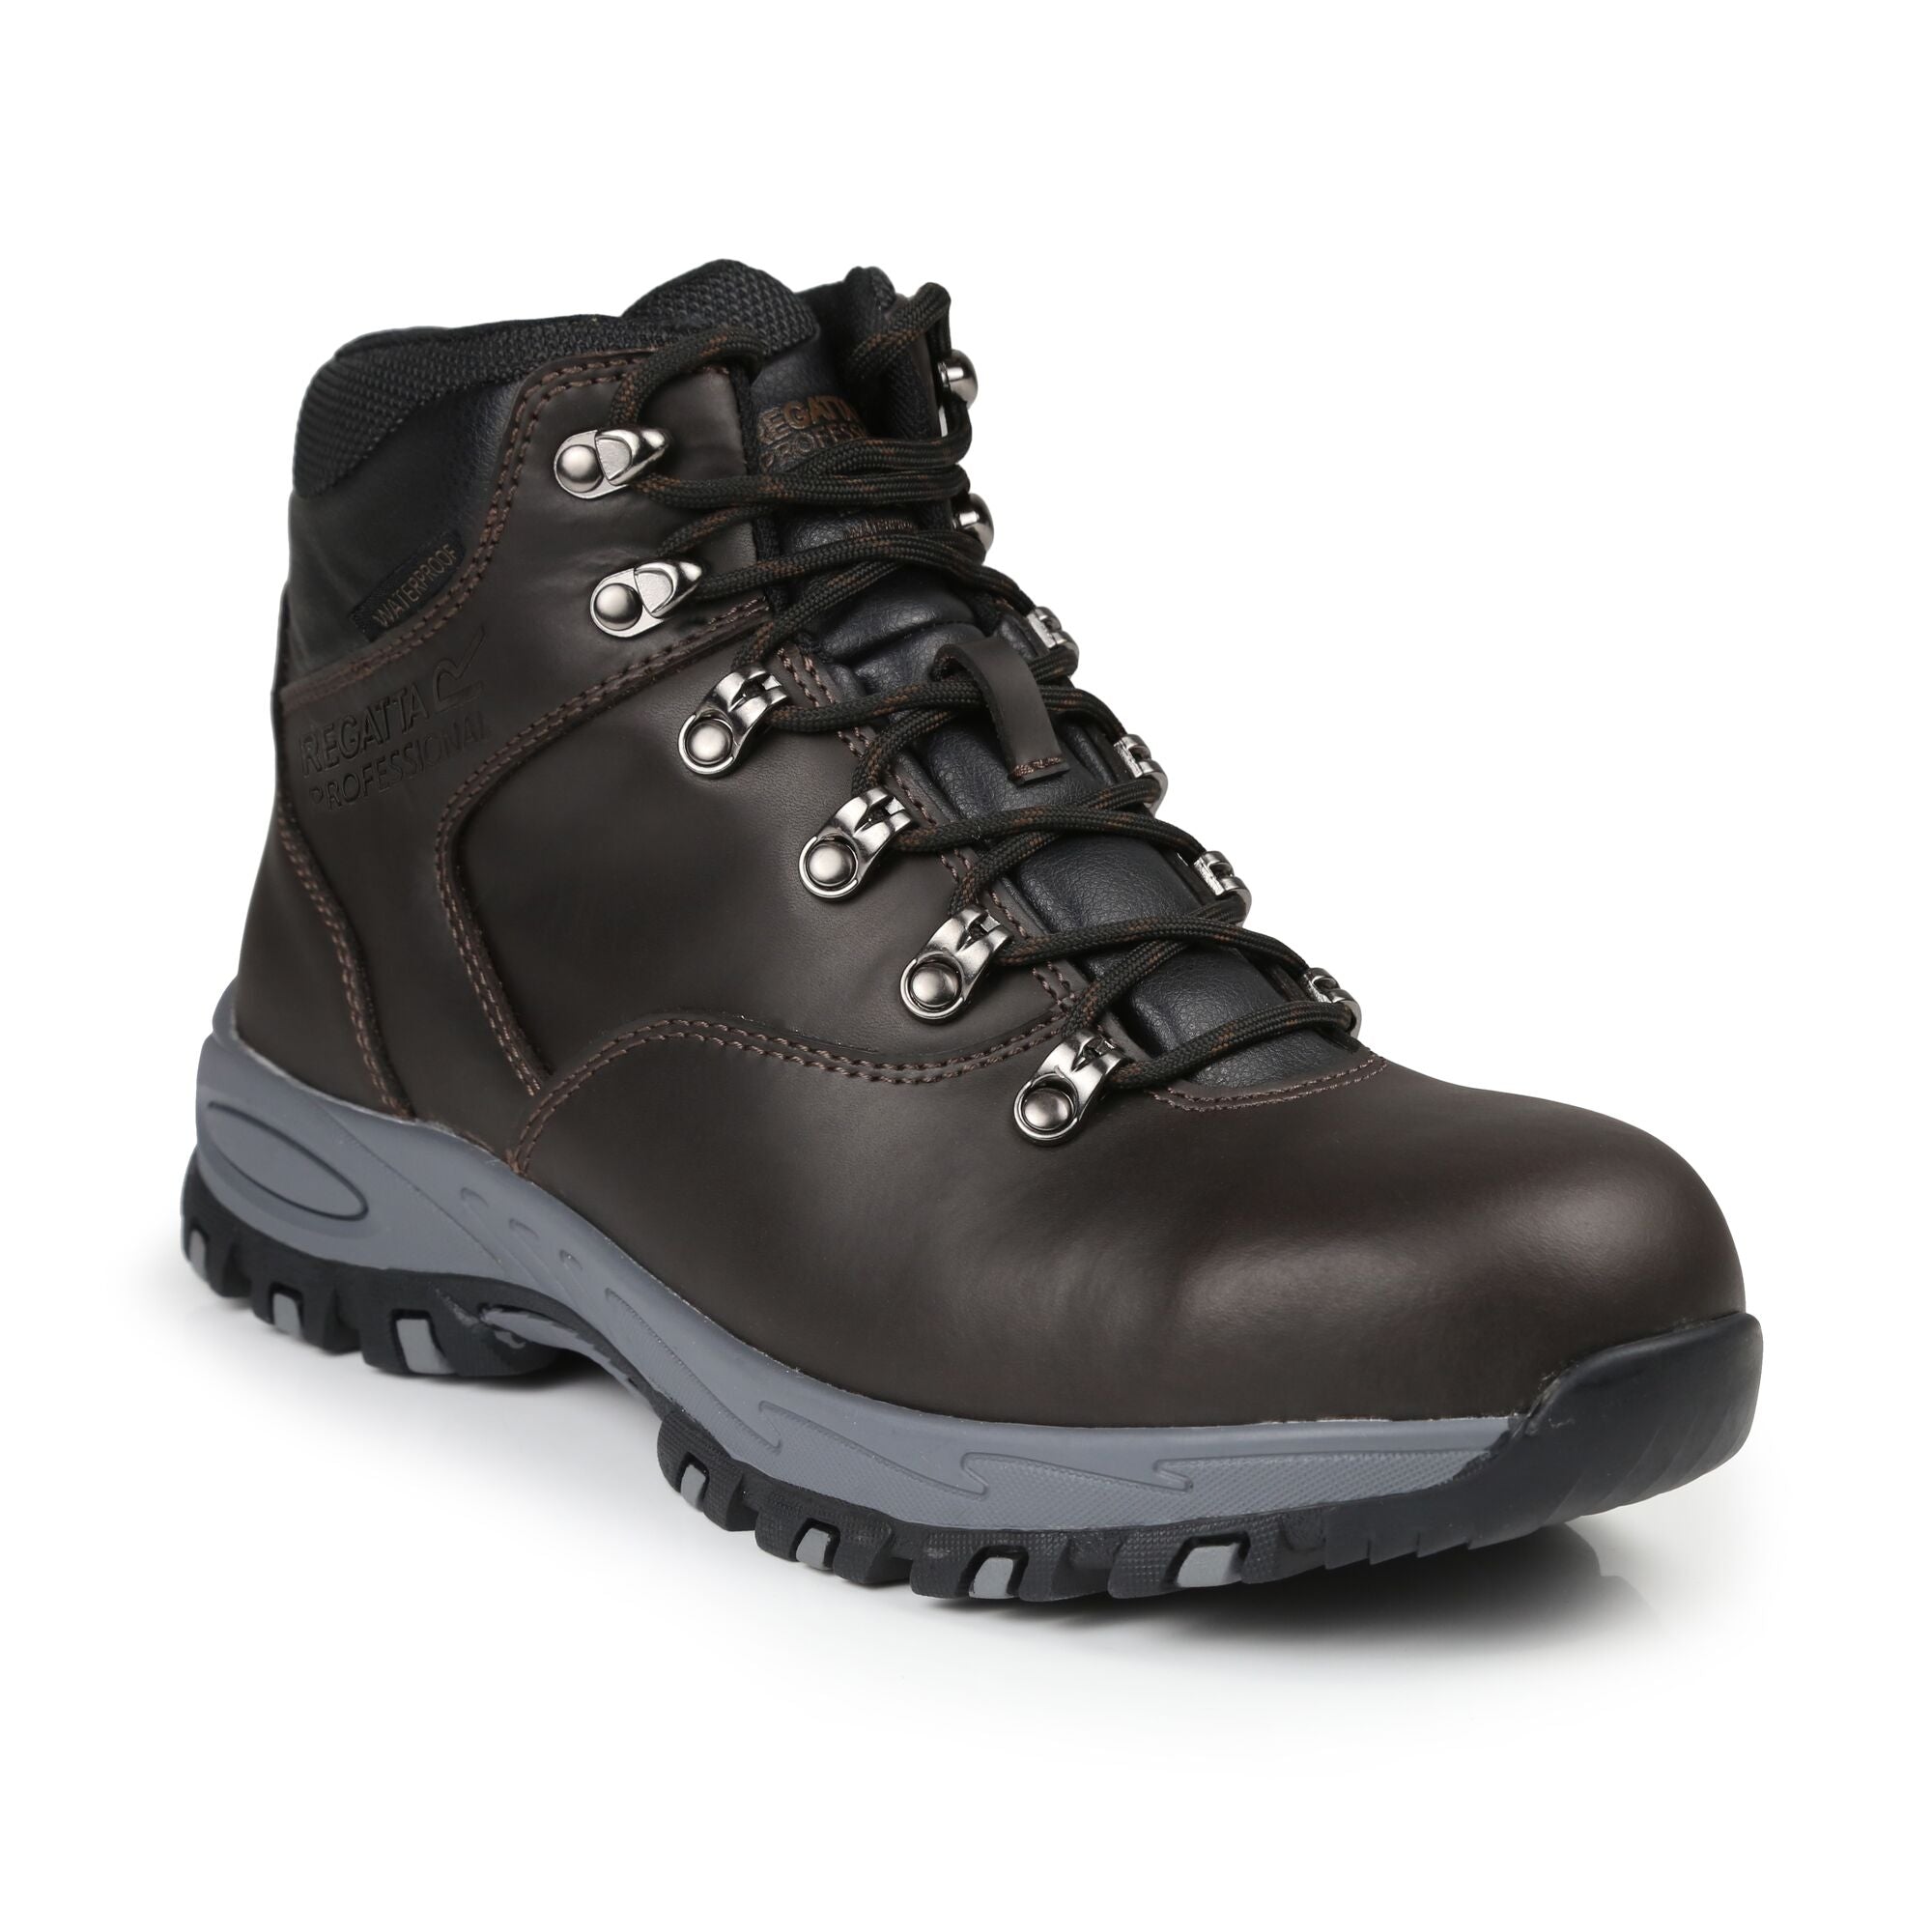 Regatta Gritstone S3 Hiker Boots - Peat